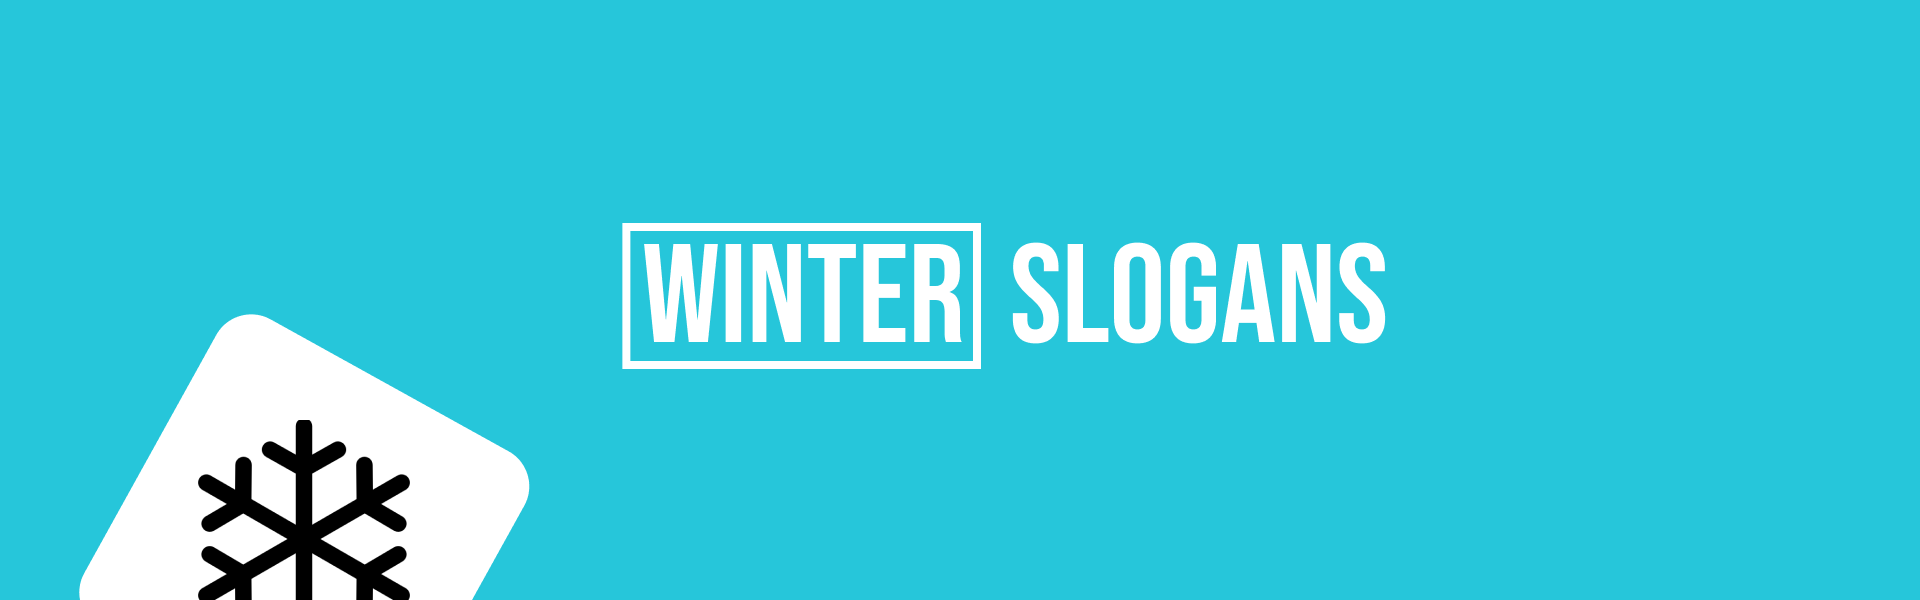 winter-slogans-featured